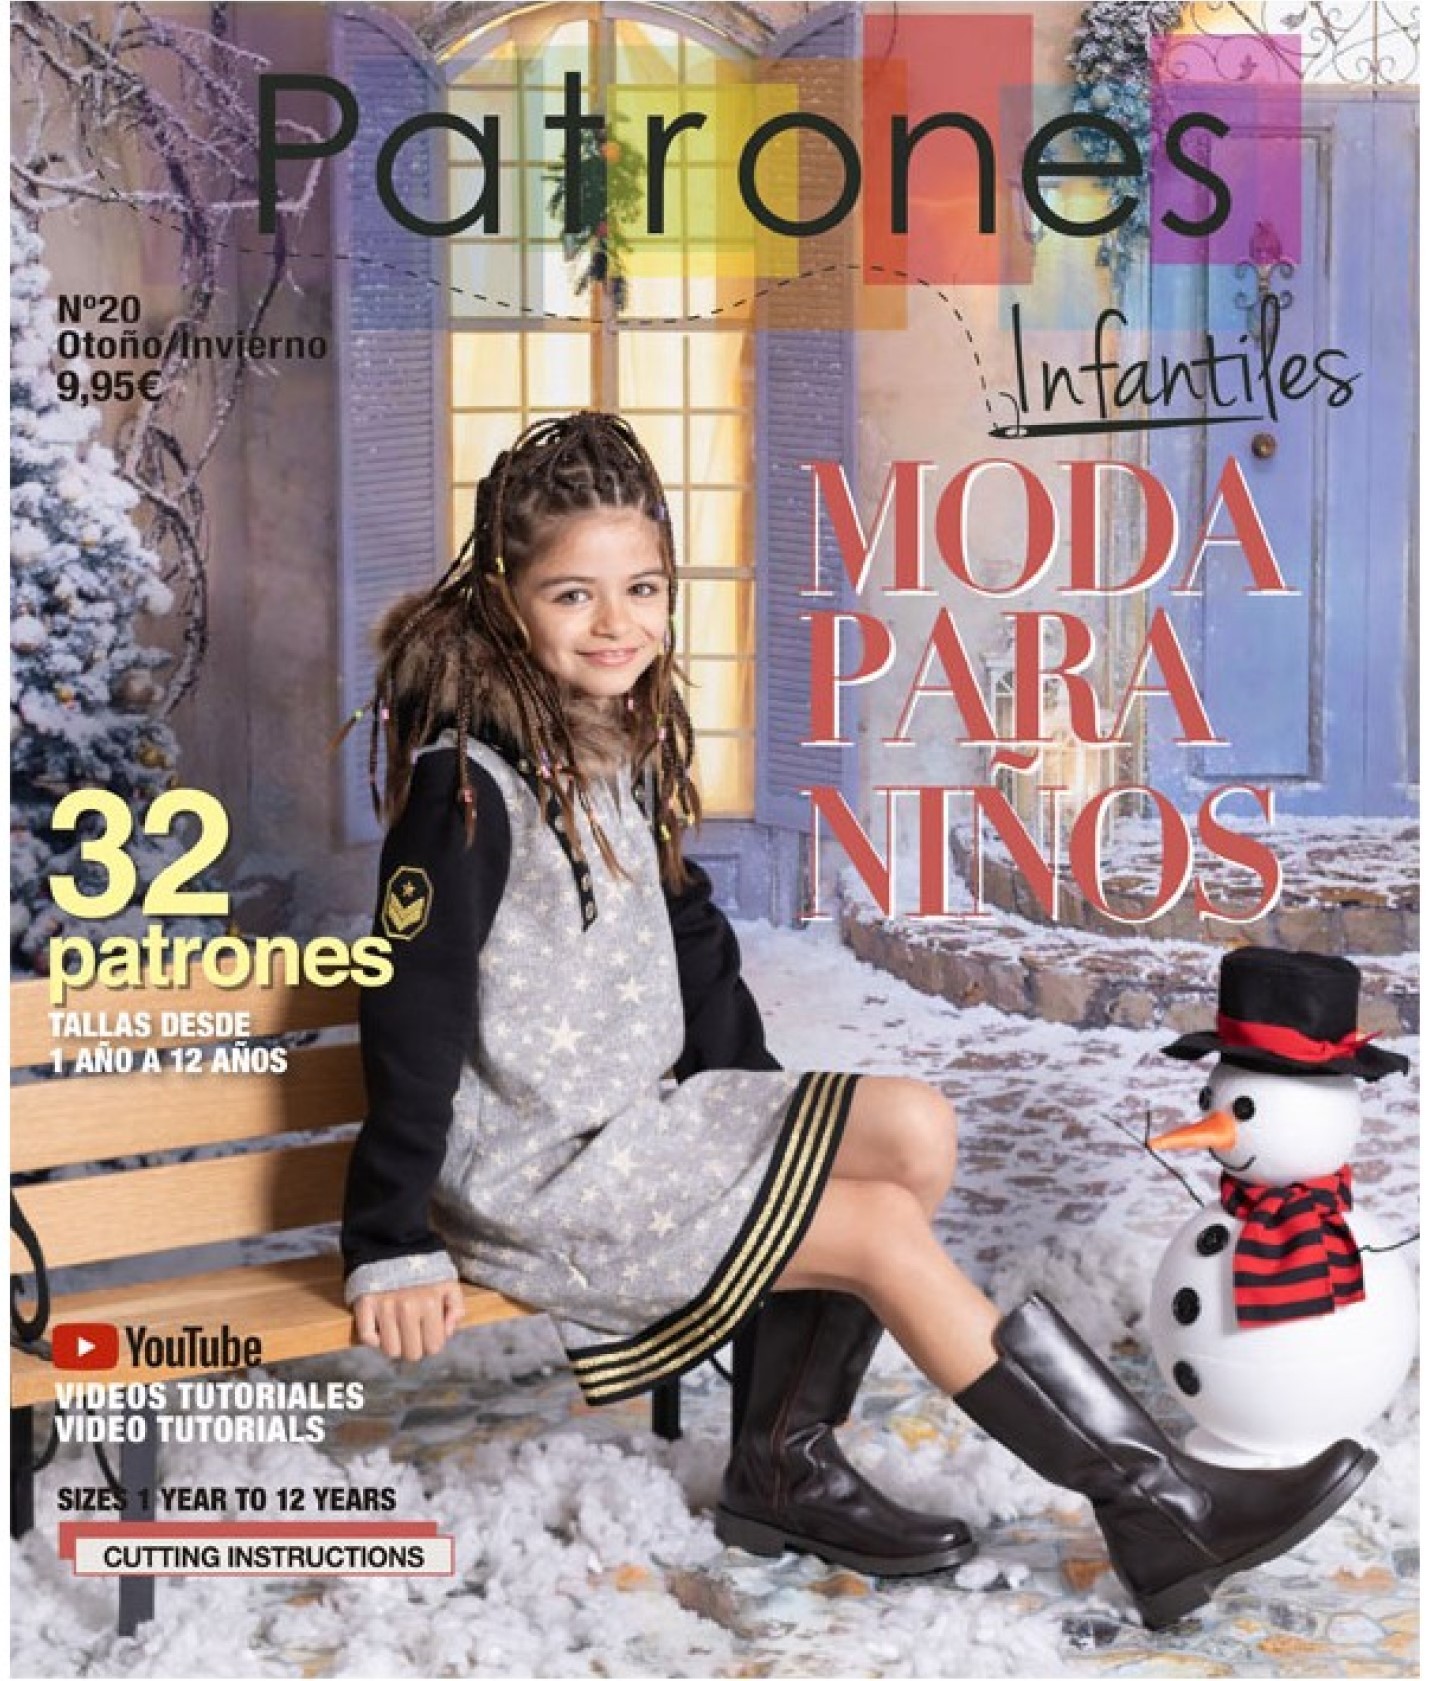 Revista PATRONESMUJER nº4. 30 patrones de ropa para mujer. Tallas